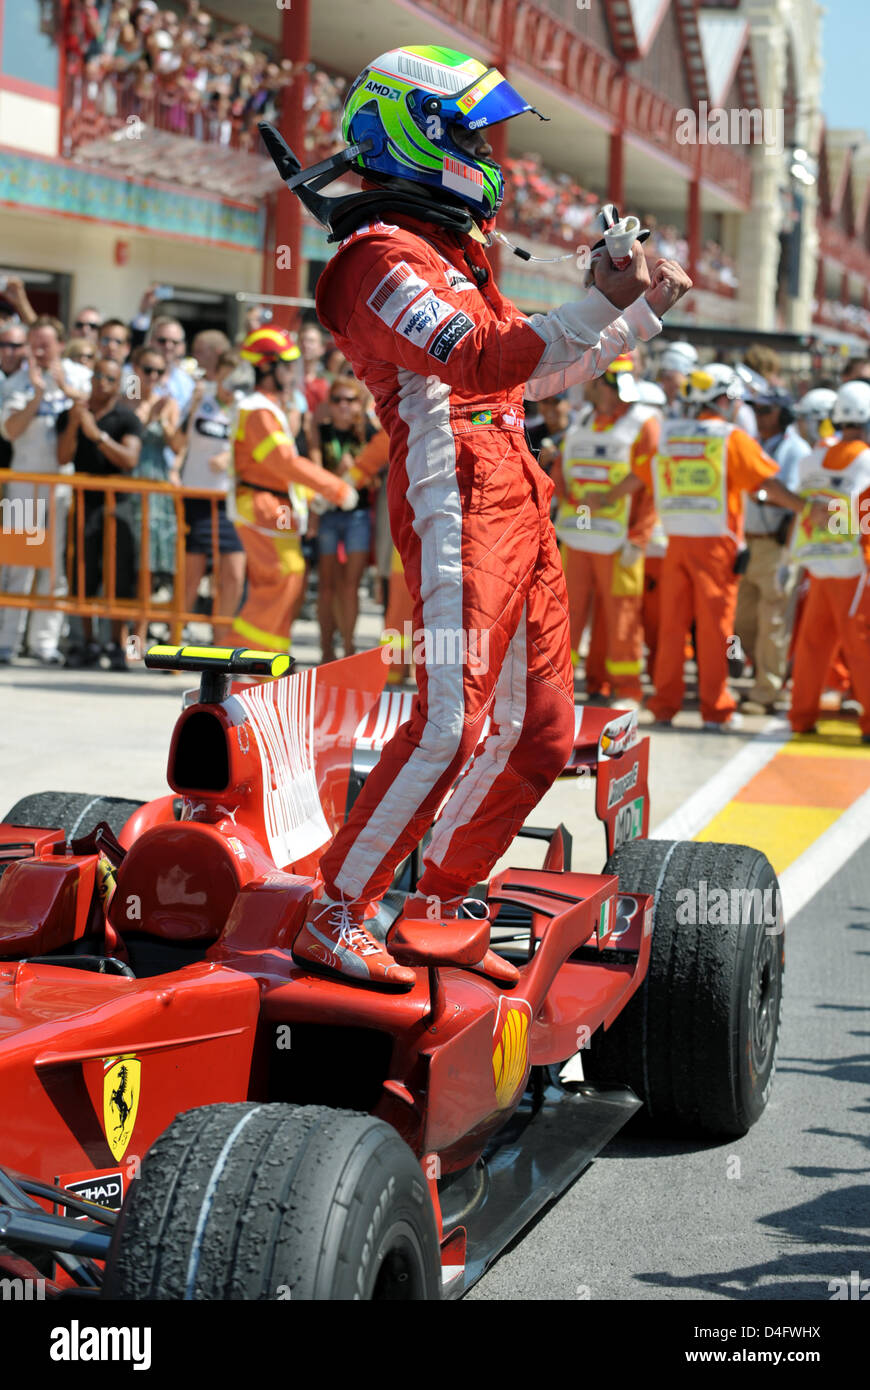 Il brasiliano pilota di Formula Uno Felipe Massa della Ferrari celebra la sua vittoria dopo il Gran Premio d'Europa a Valencia circuito cittadino di Valencia, Spagna, 24 agosto 2008. Foto: Carmen Jaspersen Foto Stock